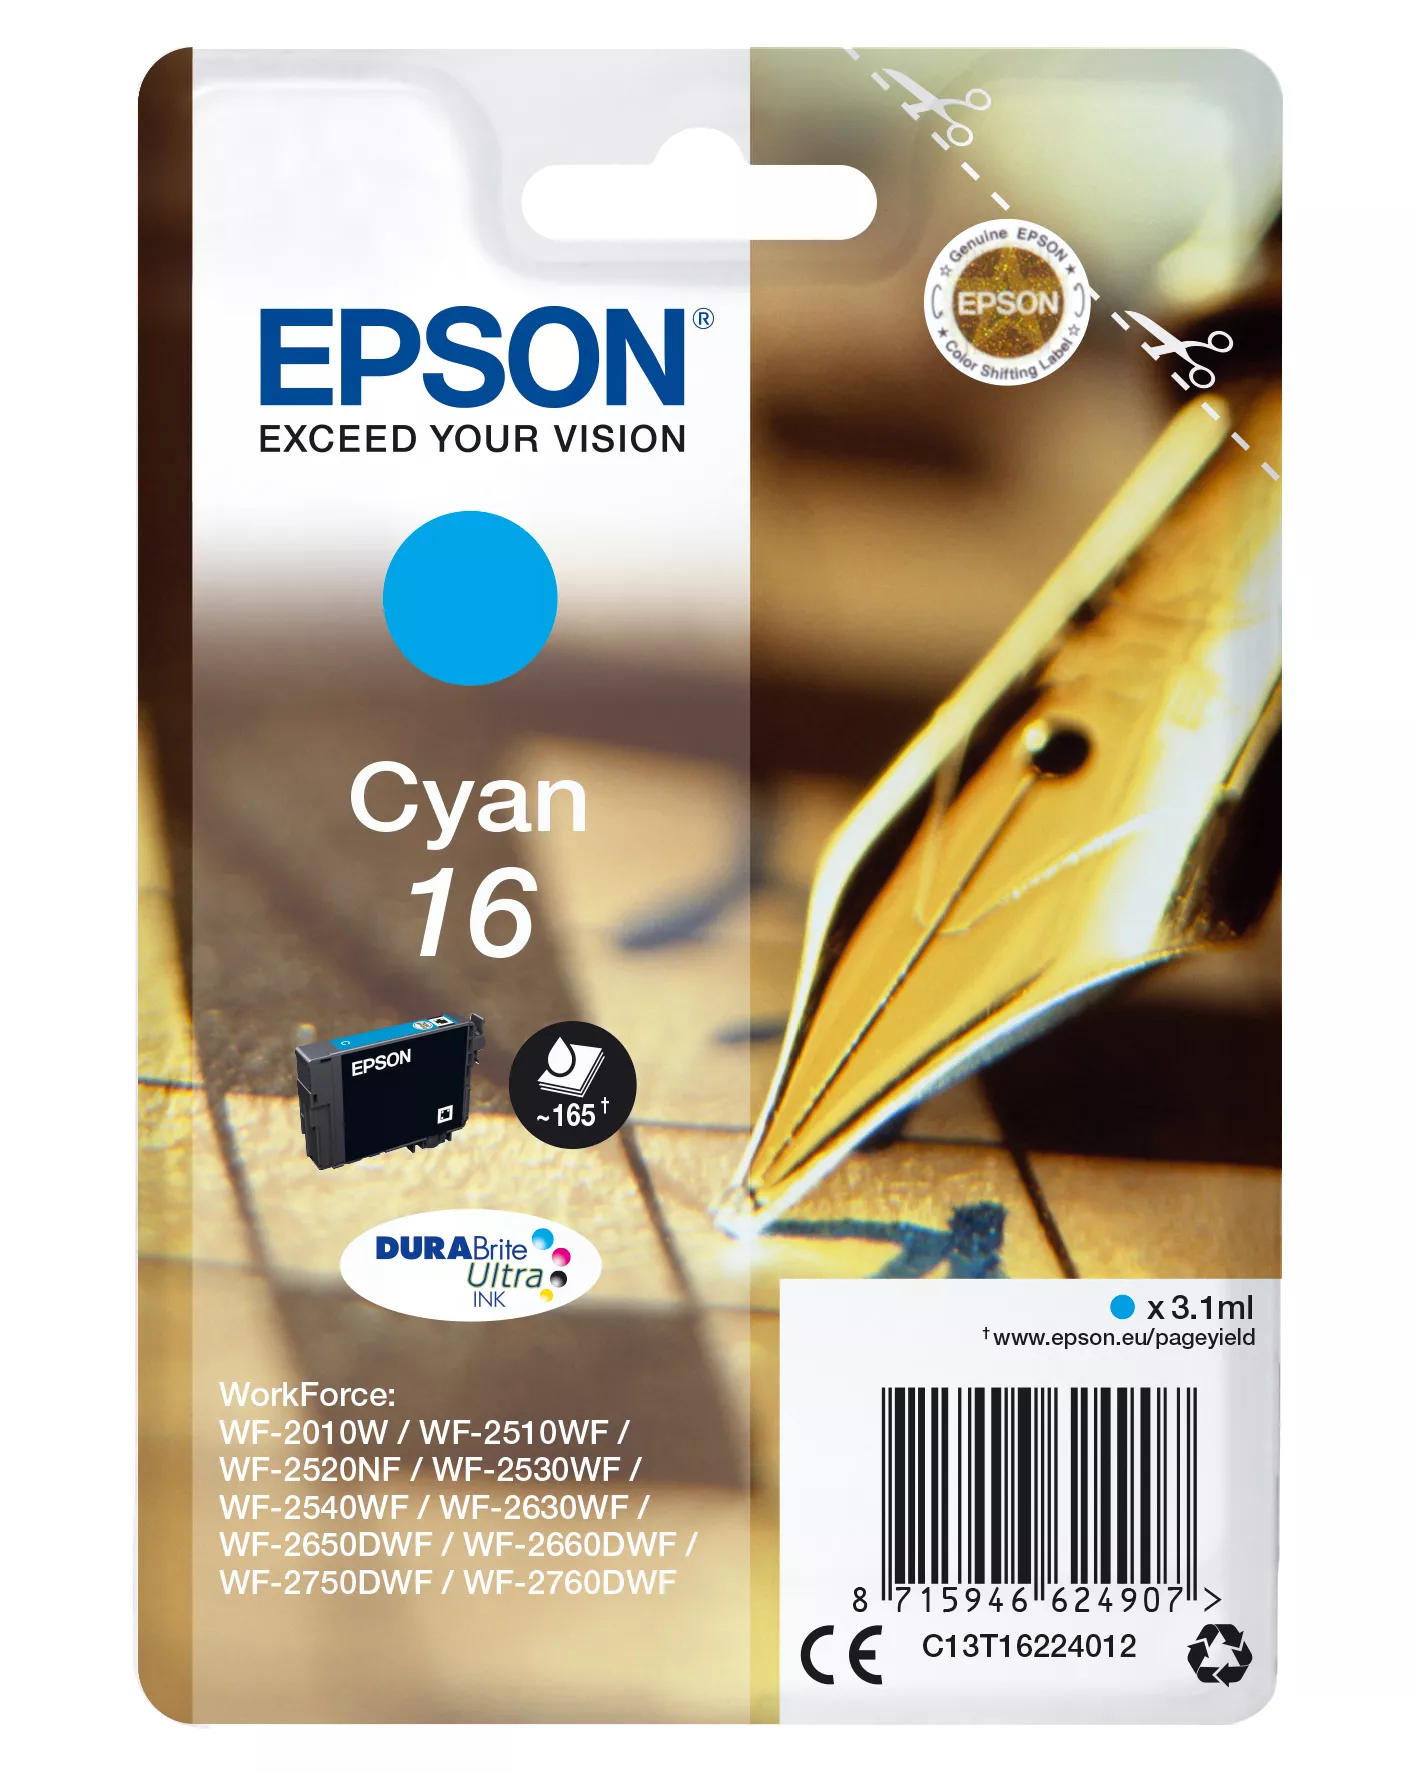 Achat EPSON 16 cartouche dencre cyan capacité standard 3.1ml au meilleur prix